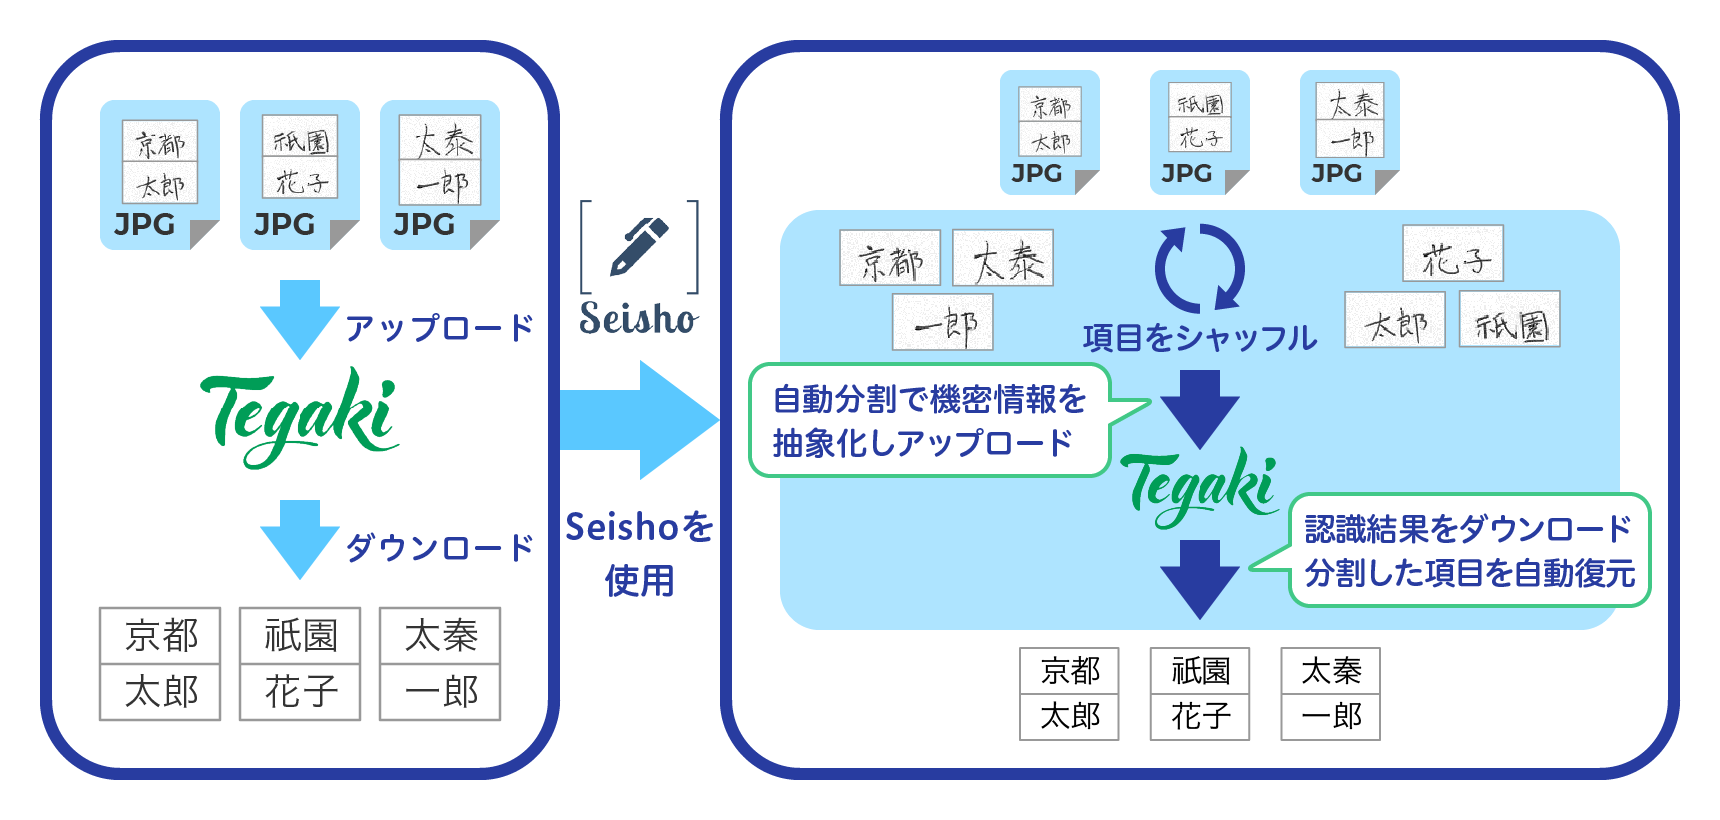 「Seisho」とのデータ連携イメージ図